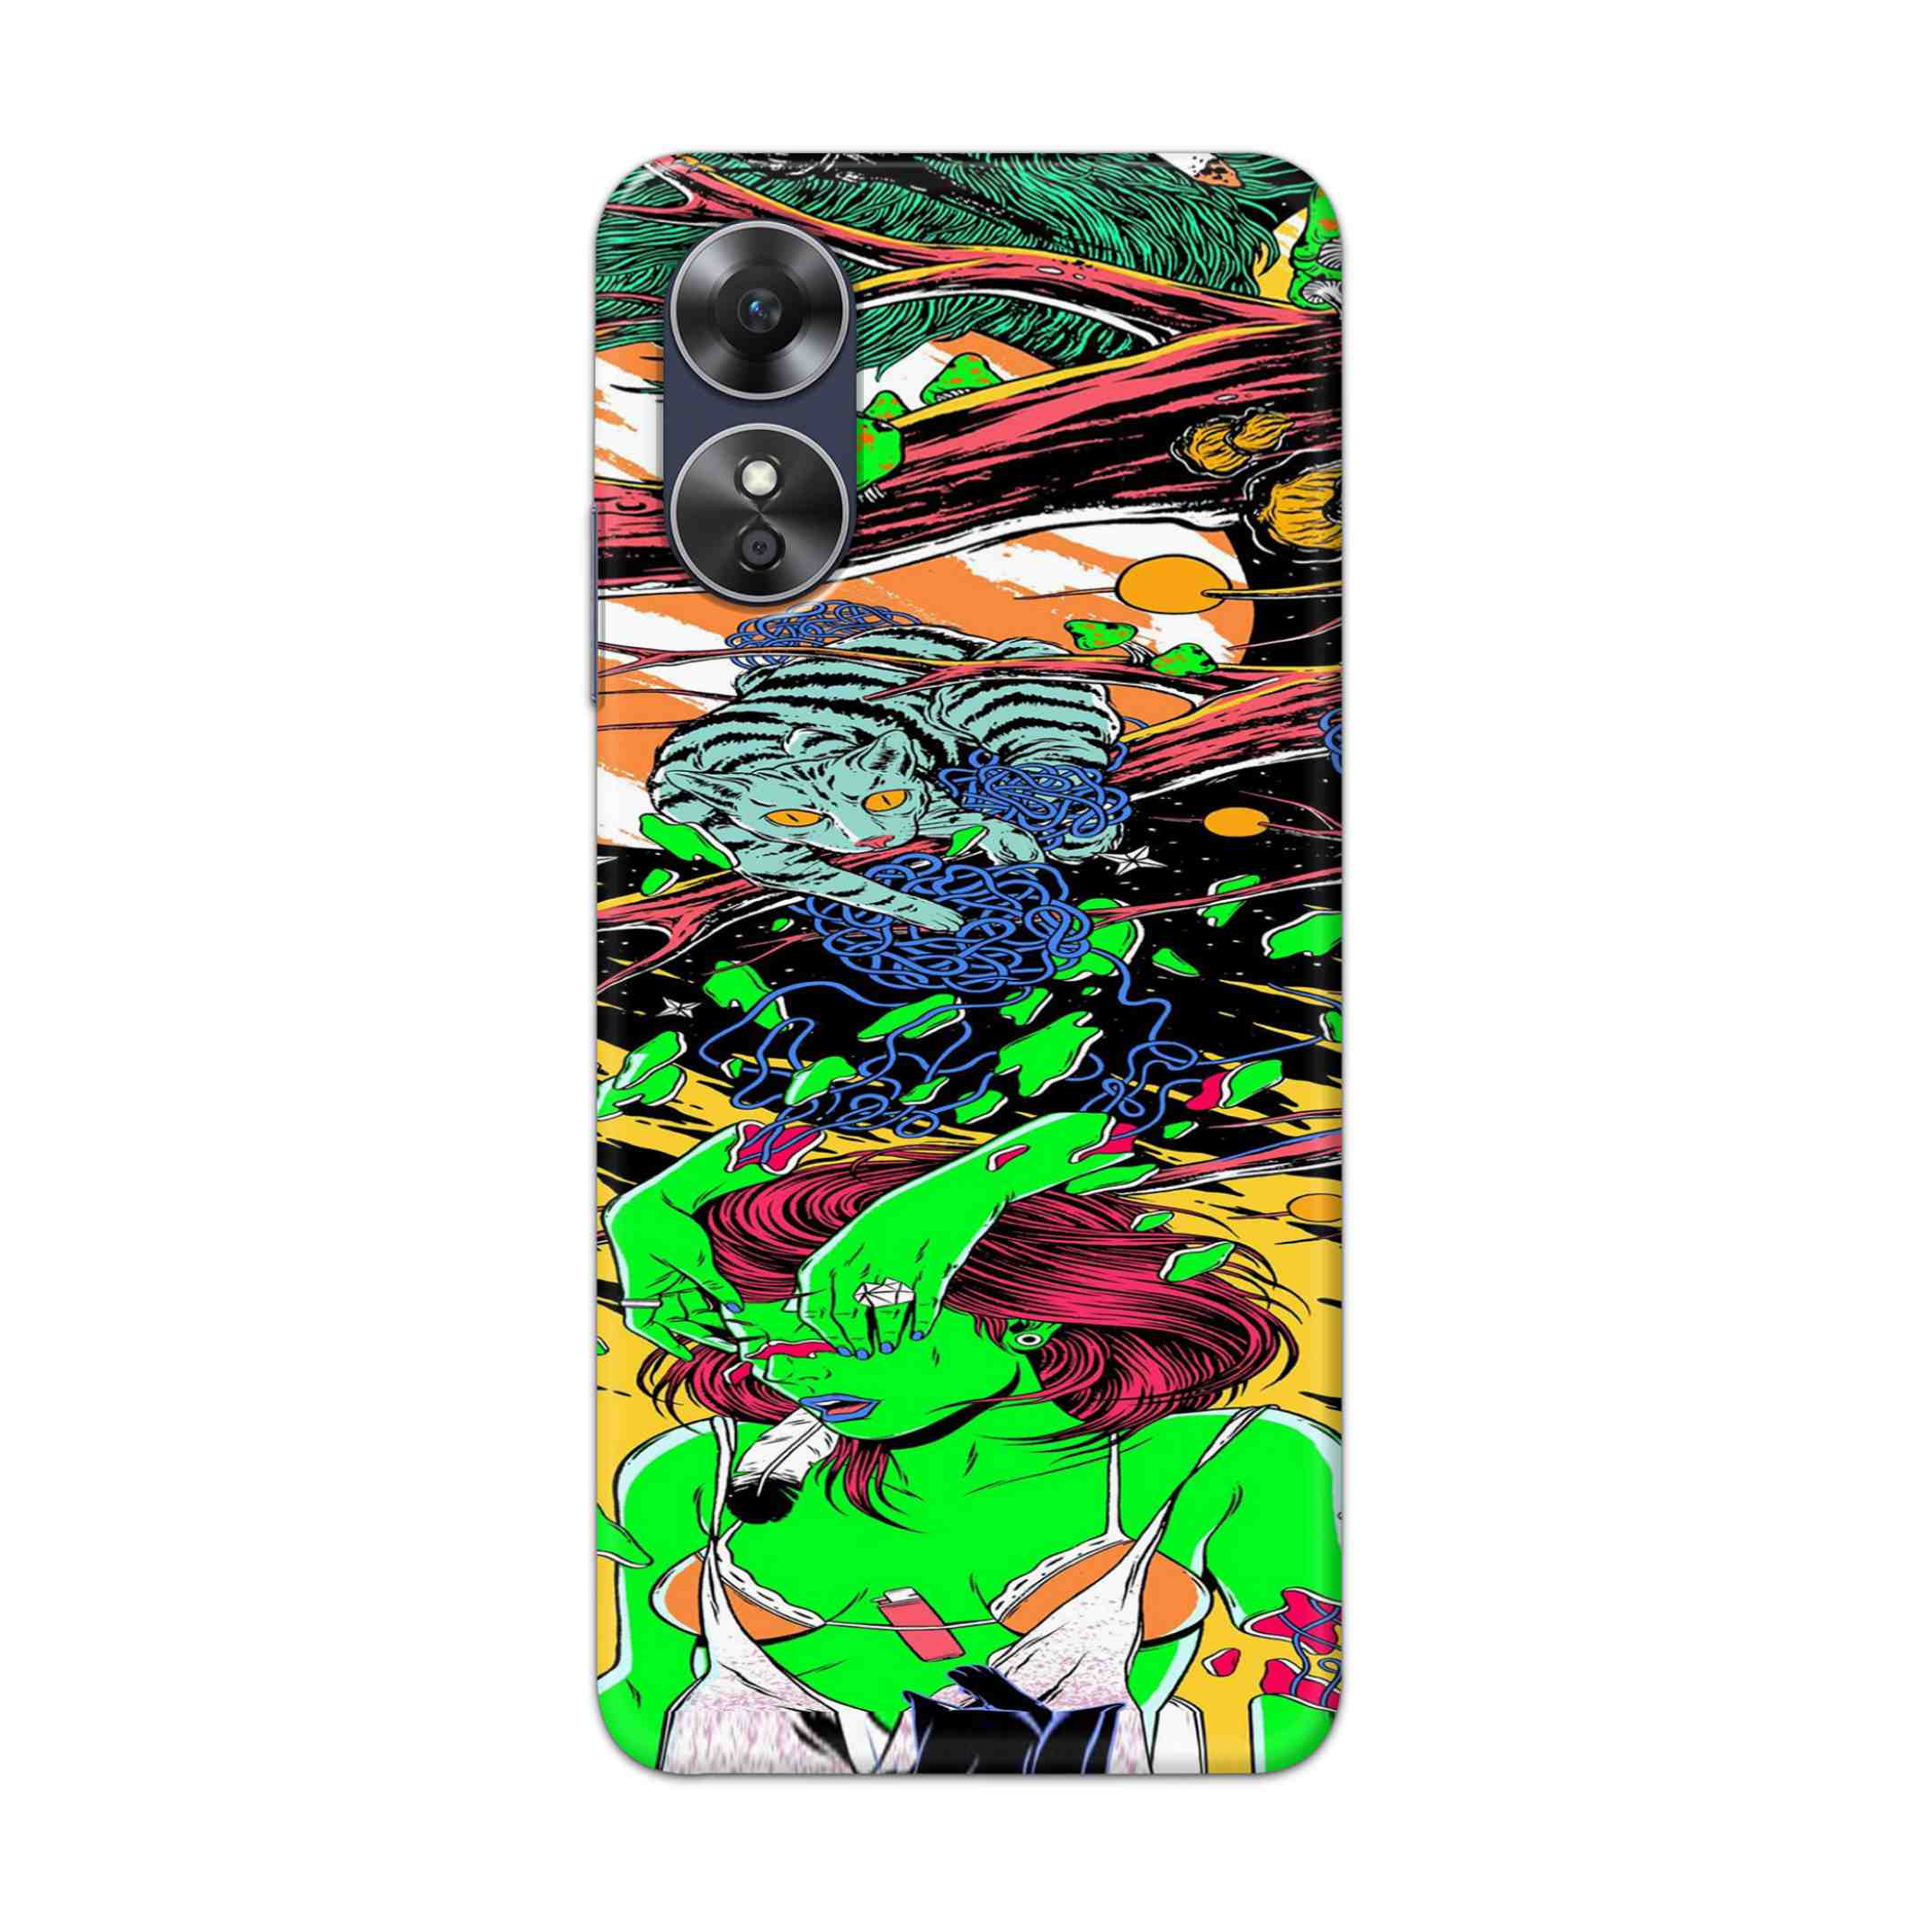 Buy Green Girl Art Hard Back Mobile Phone Case Cover For Oppo A17 Online